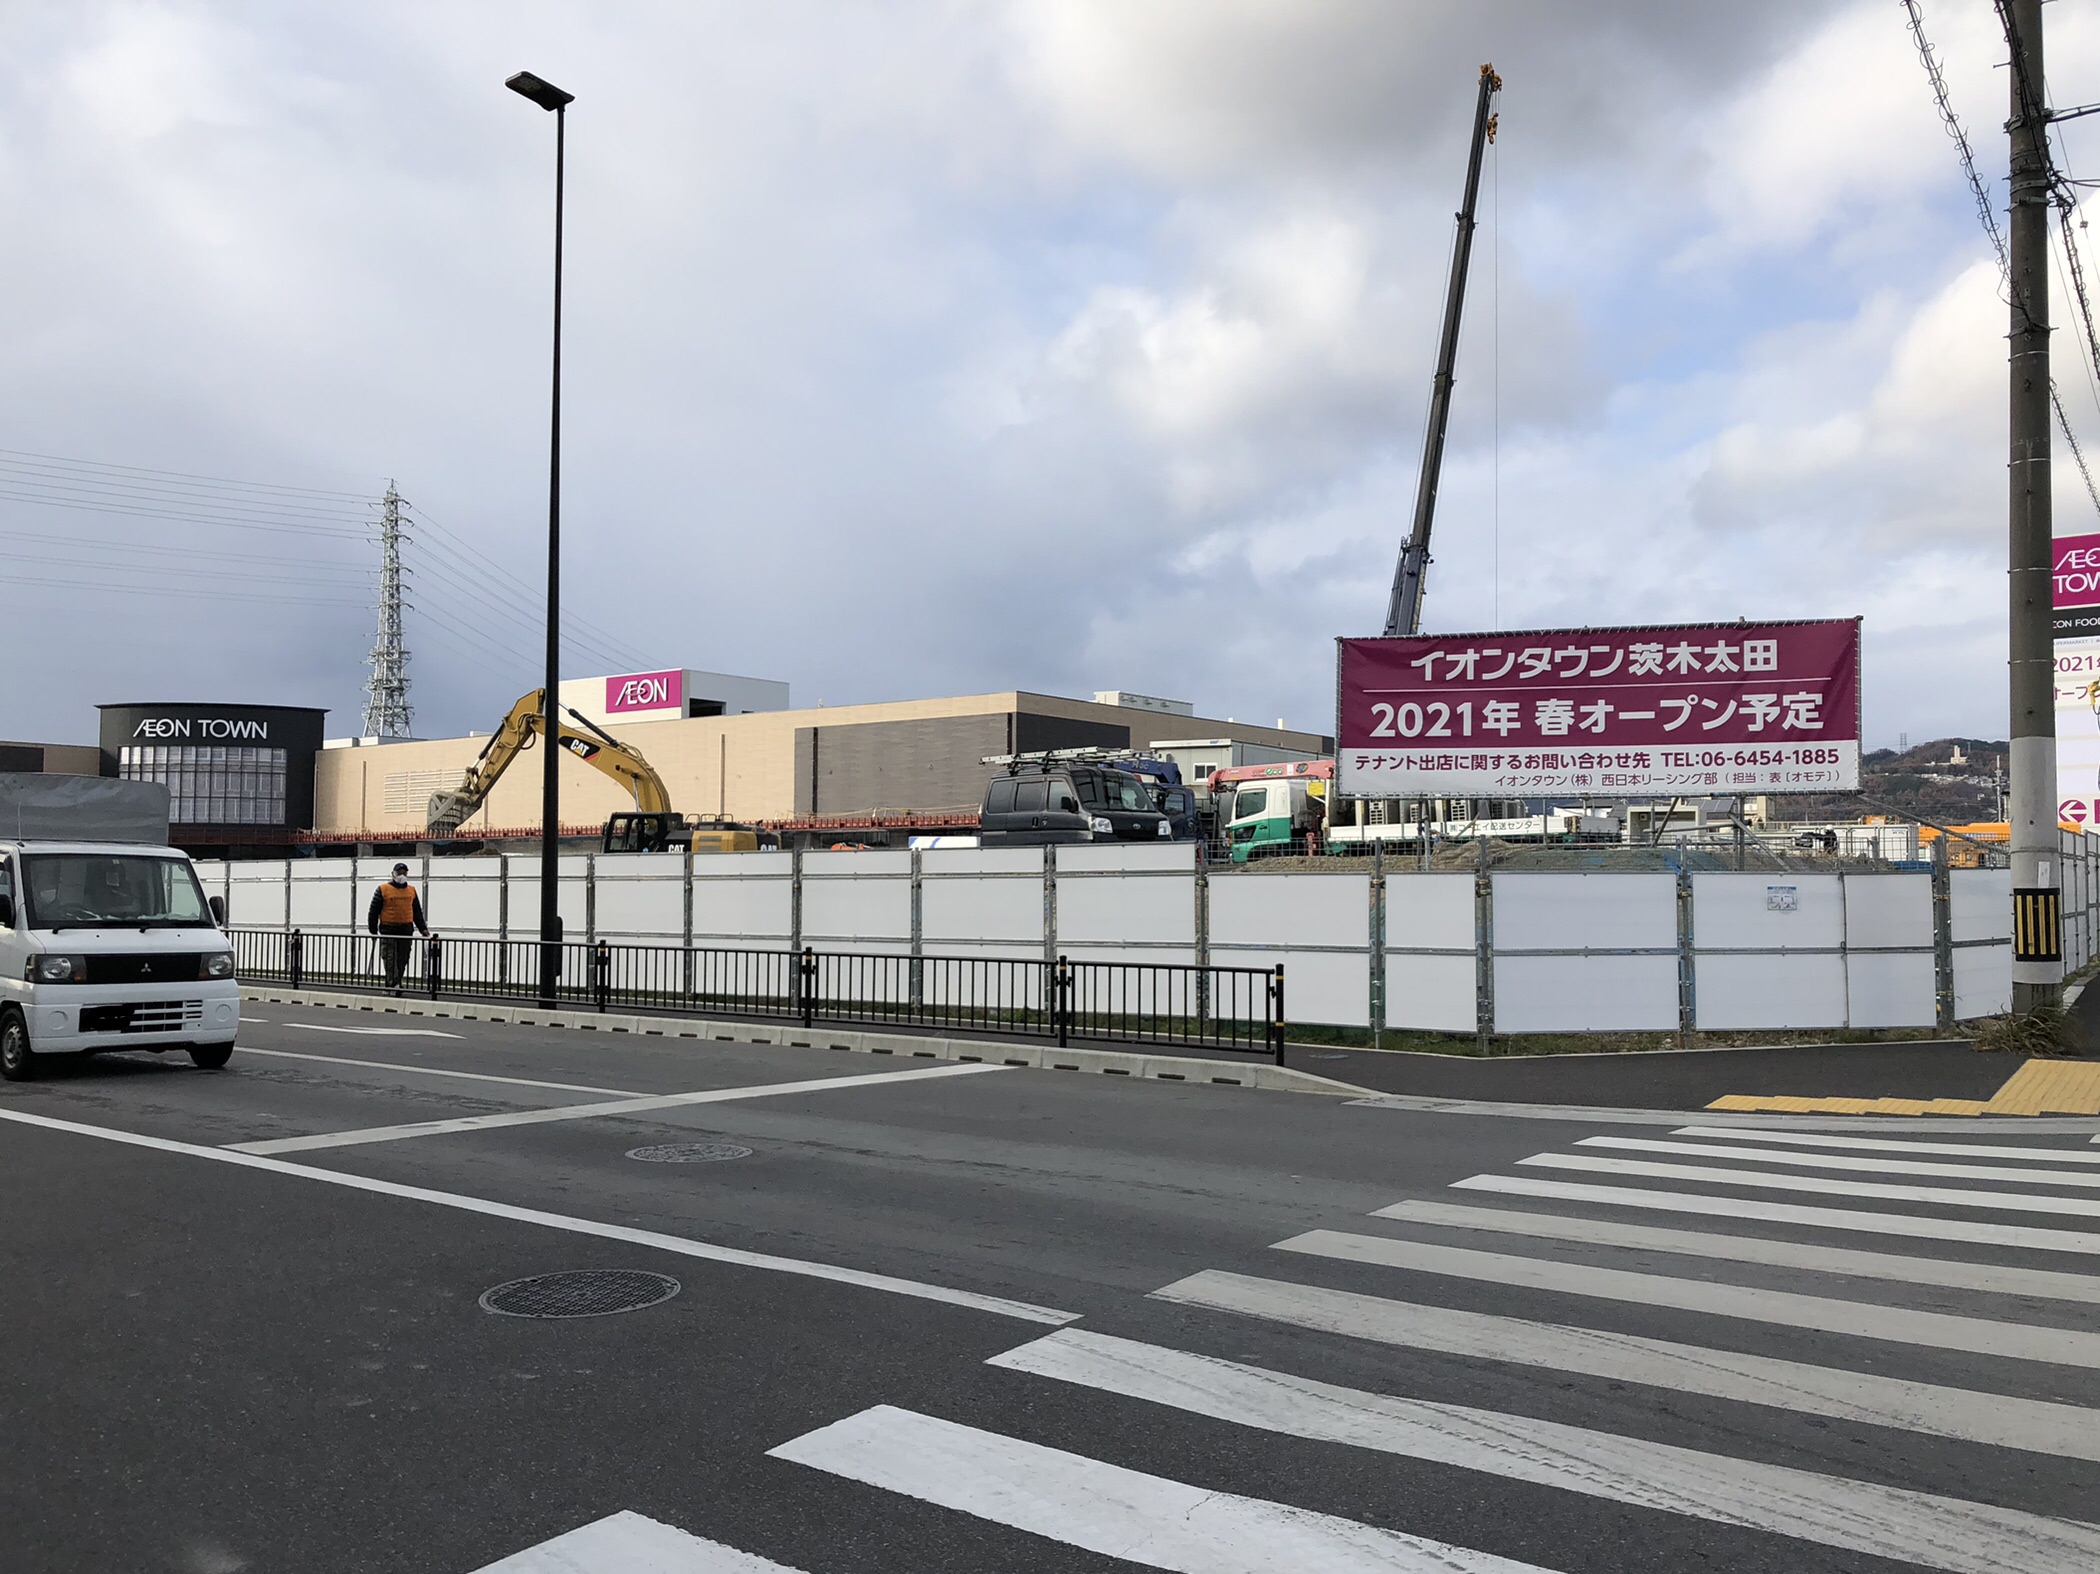 完成間近の「イオンタウン茨木太田」。本格的なオープンは2021年春を予定している。